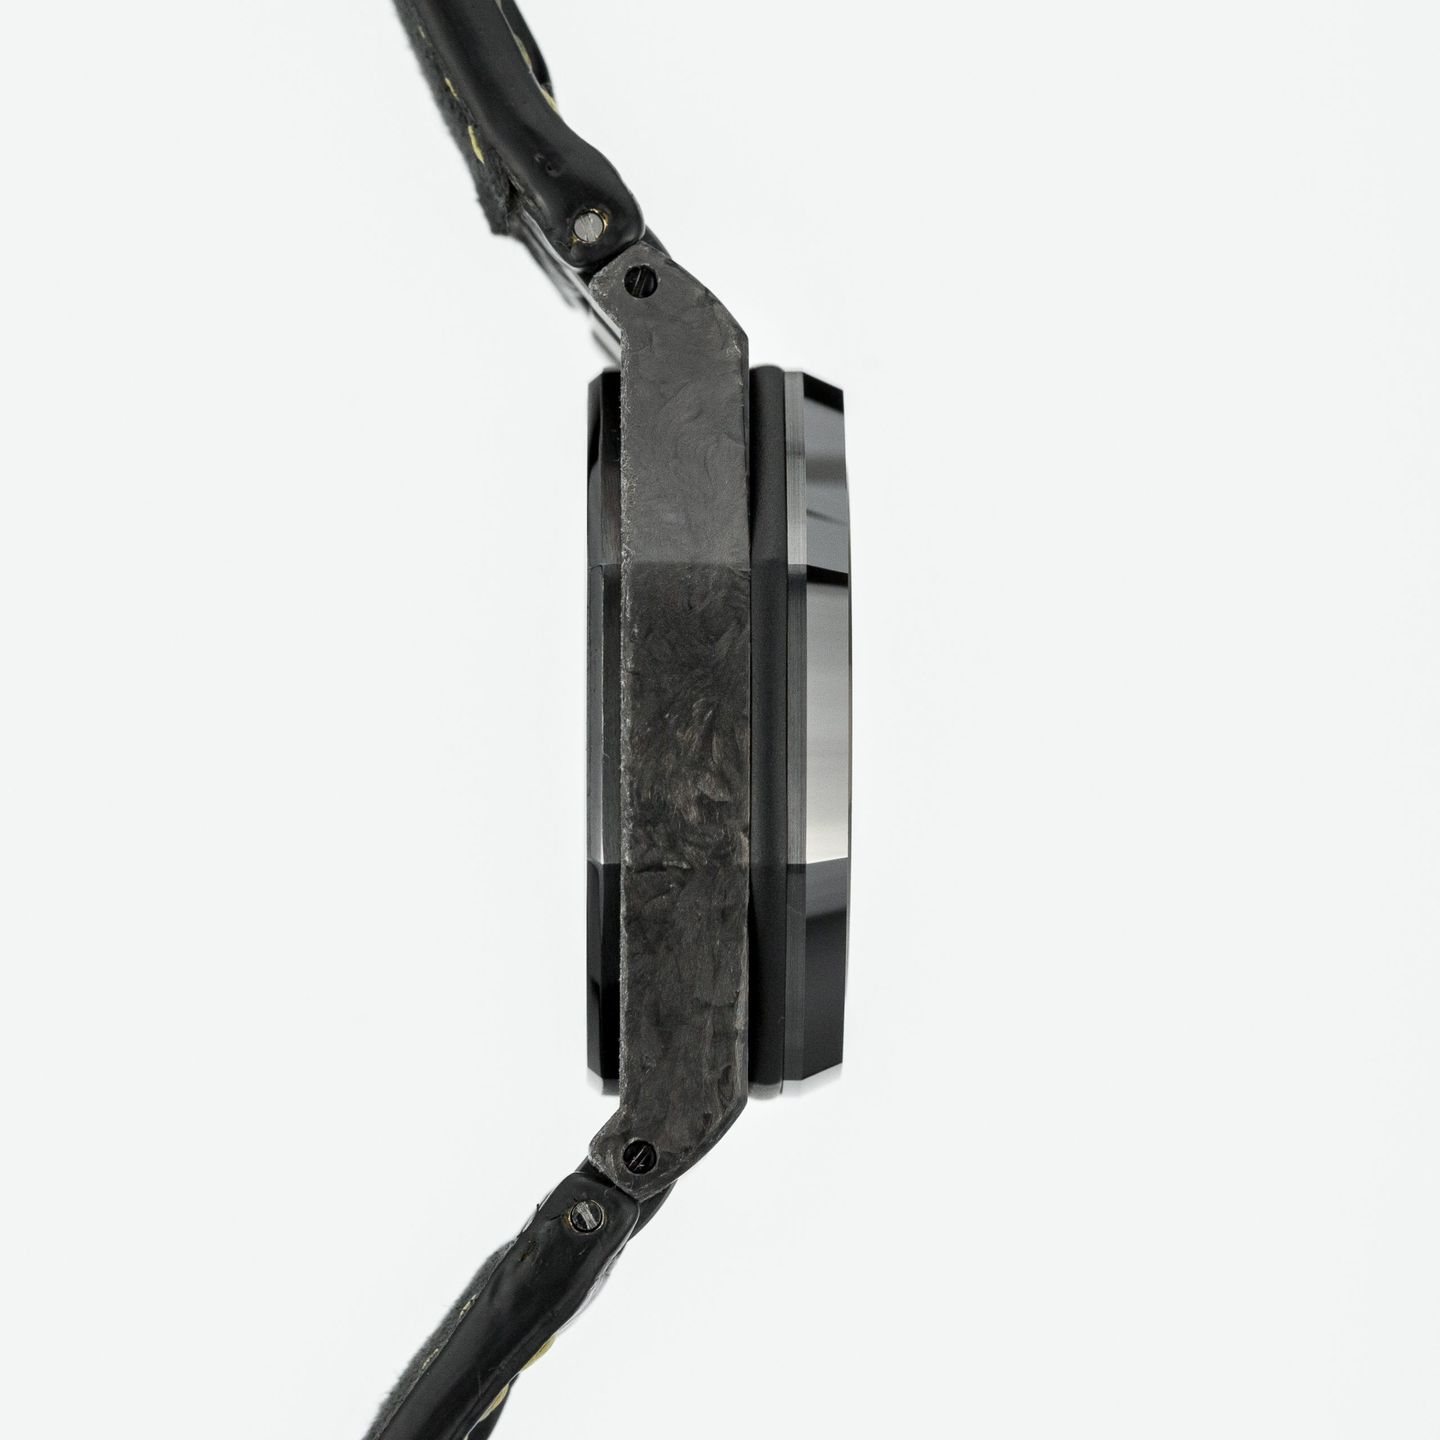 Audemars Piguet Royal Oak Offshore Chronograph 26176FO.OO.D101CR.02 (Unknown (random serial)) - Black dial 42 mm Carbon case (5/7)